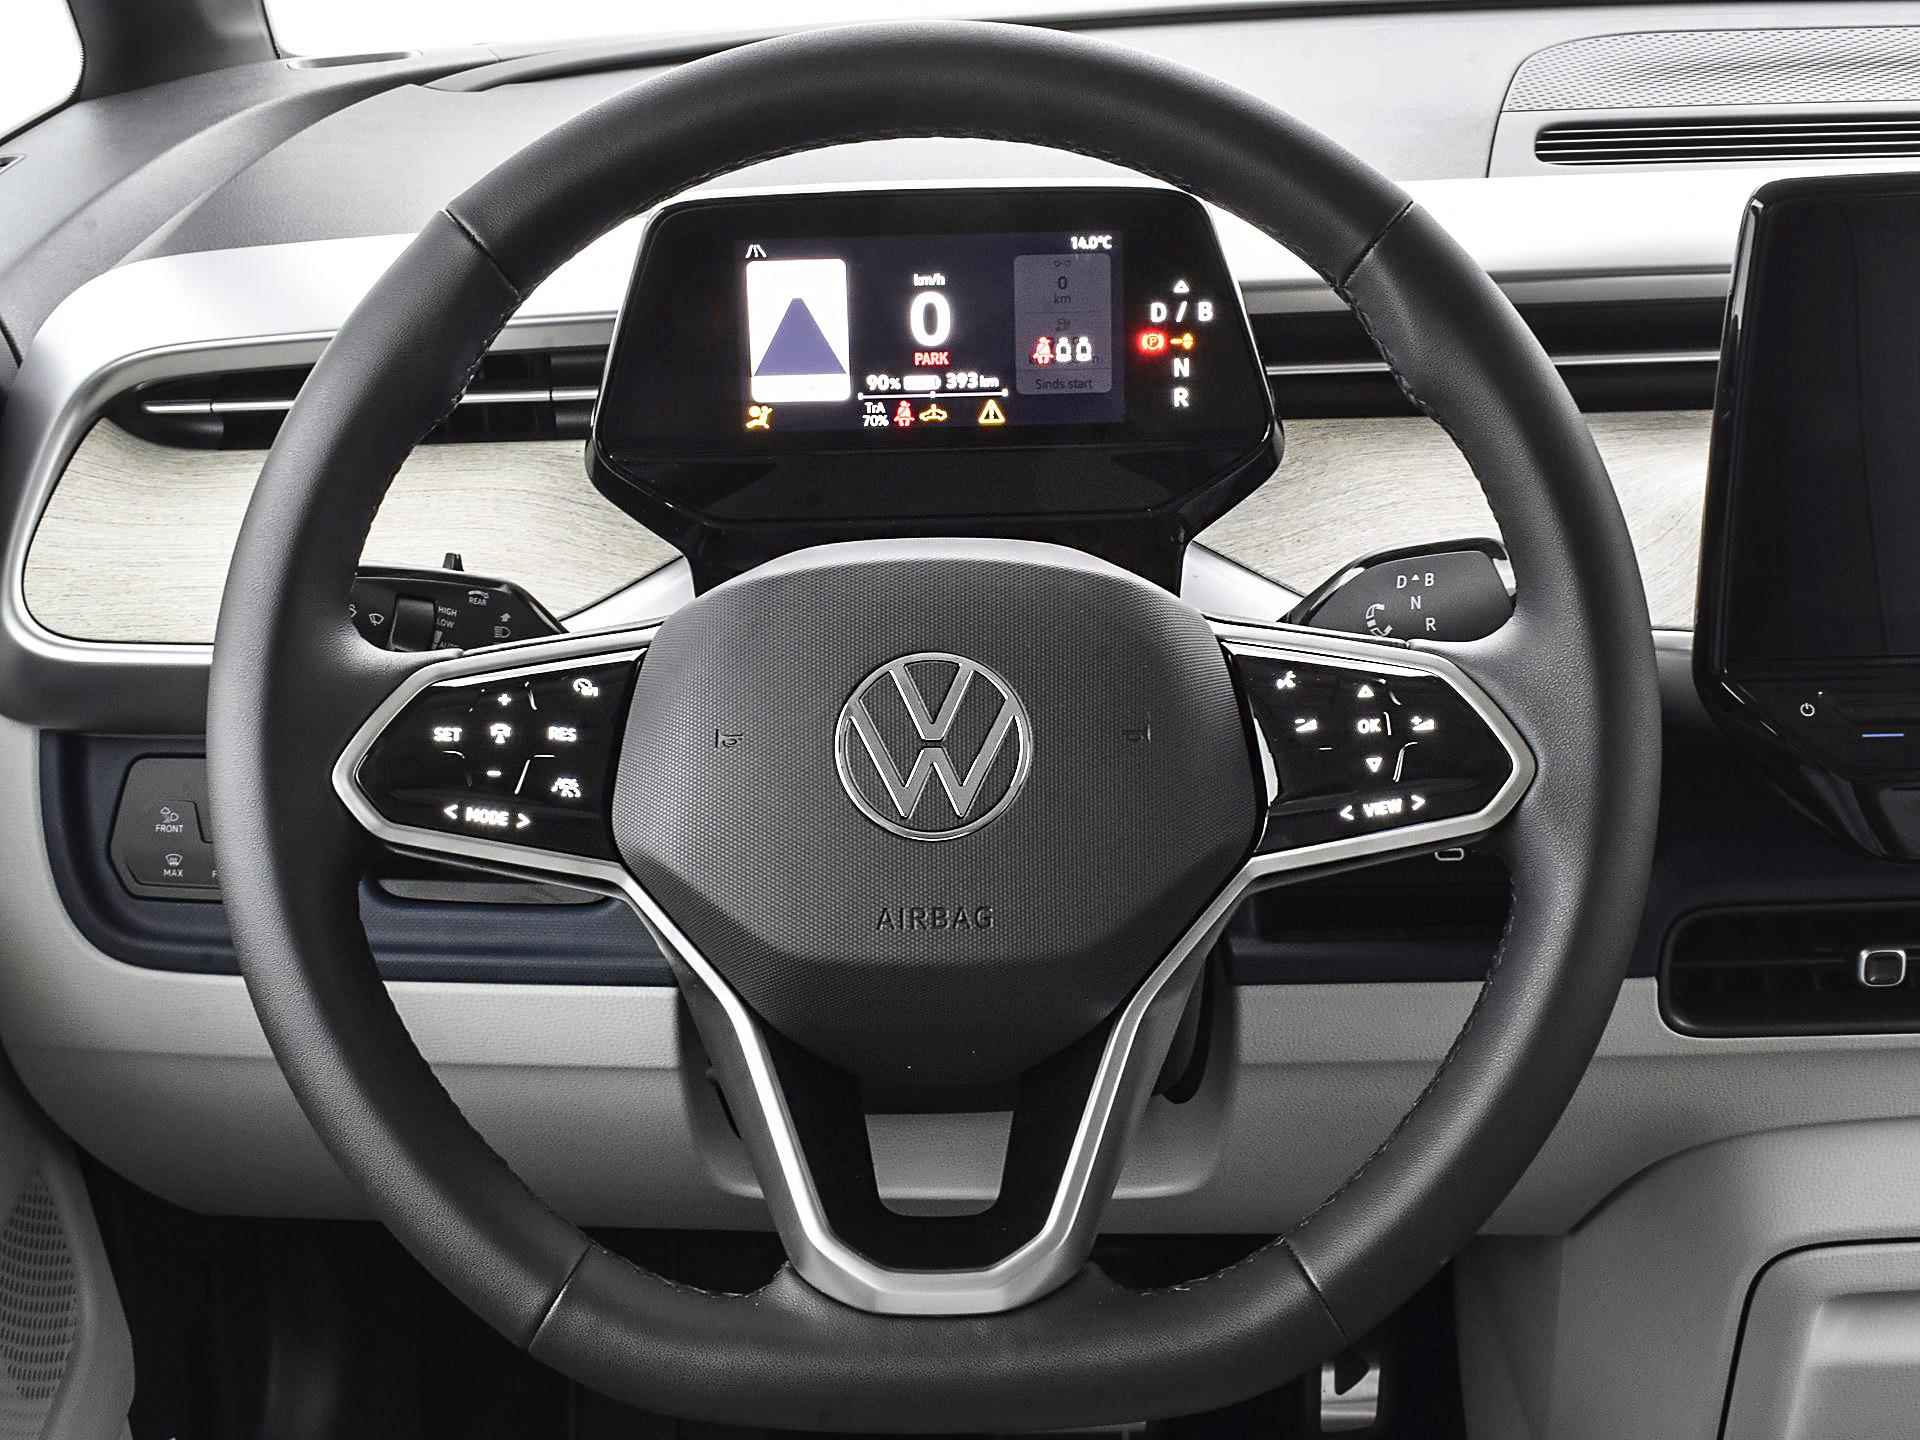 Volkswagen ID. Buzz pro advantage Elektromotor 150 kW / 204 pk electr. aandrijving · Assistance pakket · Design pakket · multimedia pakket plus · open & close pakket plus · trekhaak · MEGA Sale - 20/40